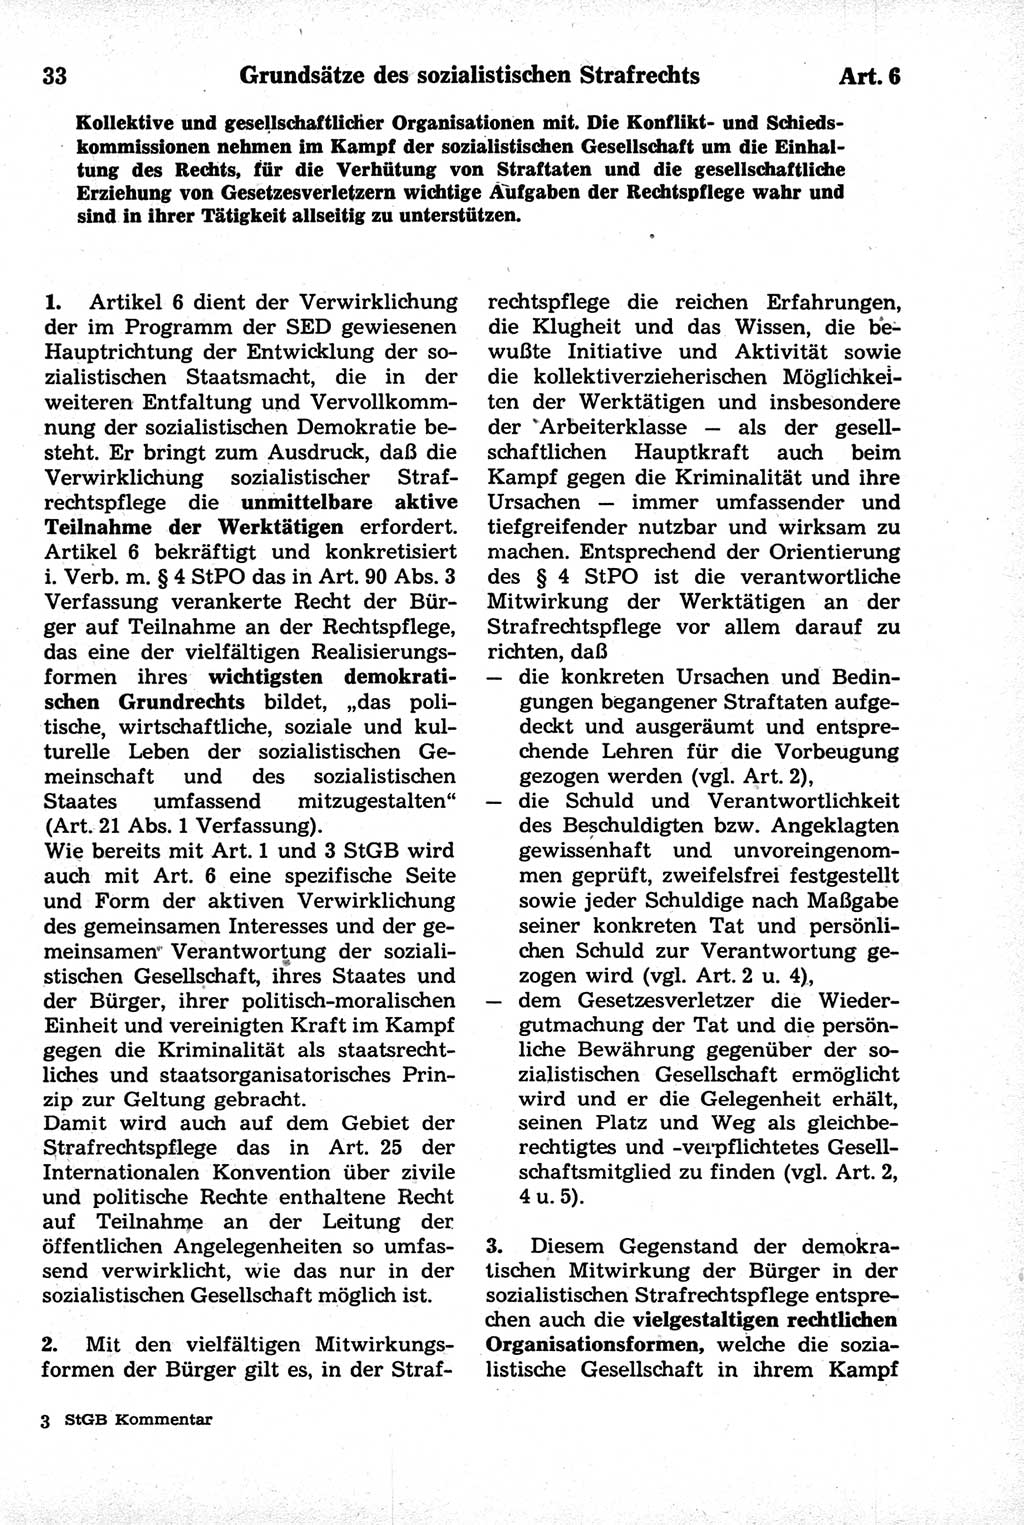 Strafrecht der Deutschen Demokratischen Republik (DDR), Kommentar zum Strafgesetzbuch (StGB) 1981, Seite 33 (Strafr. DDR Komm. StGB 1981, S. 33)